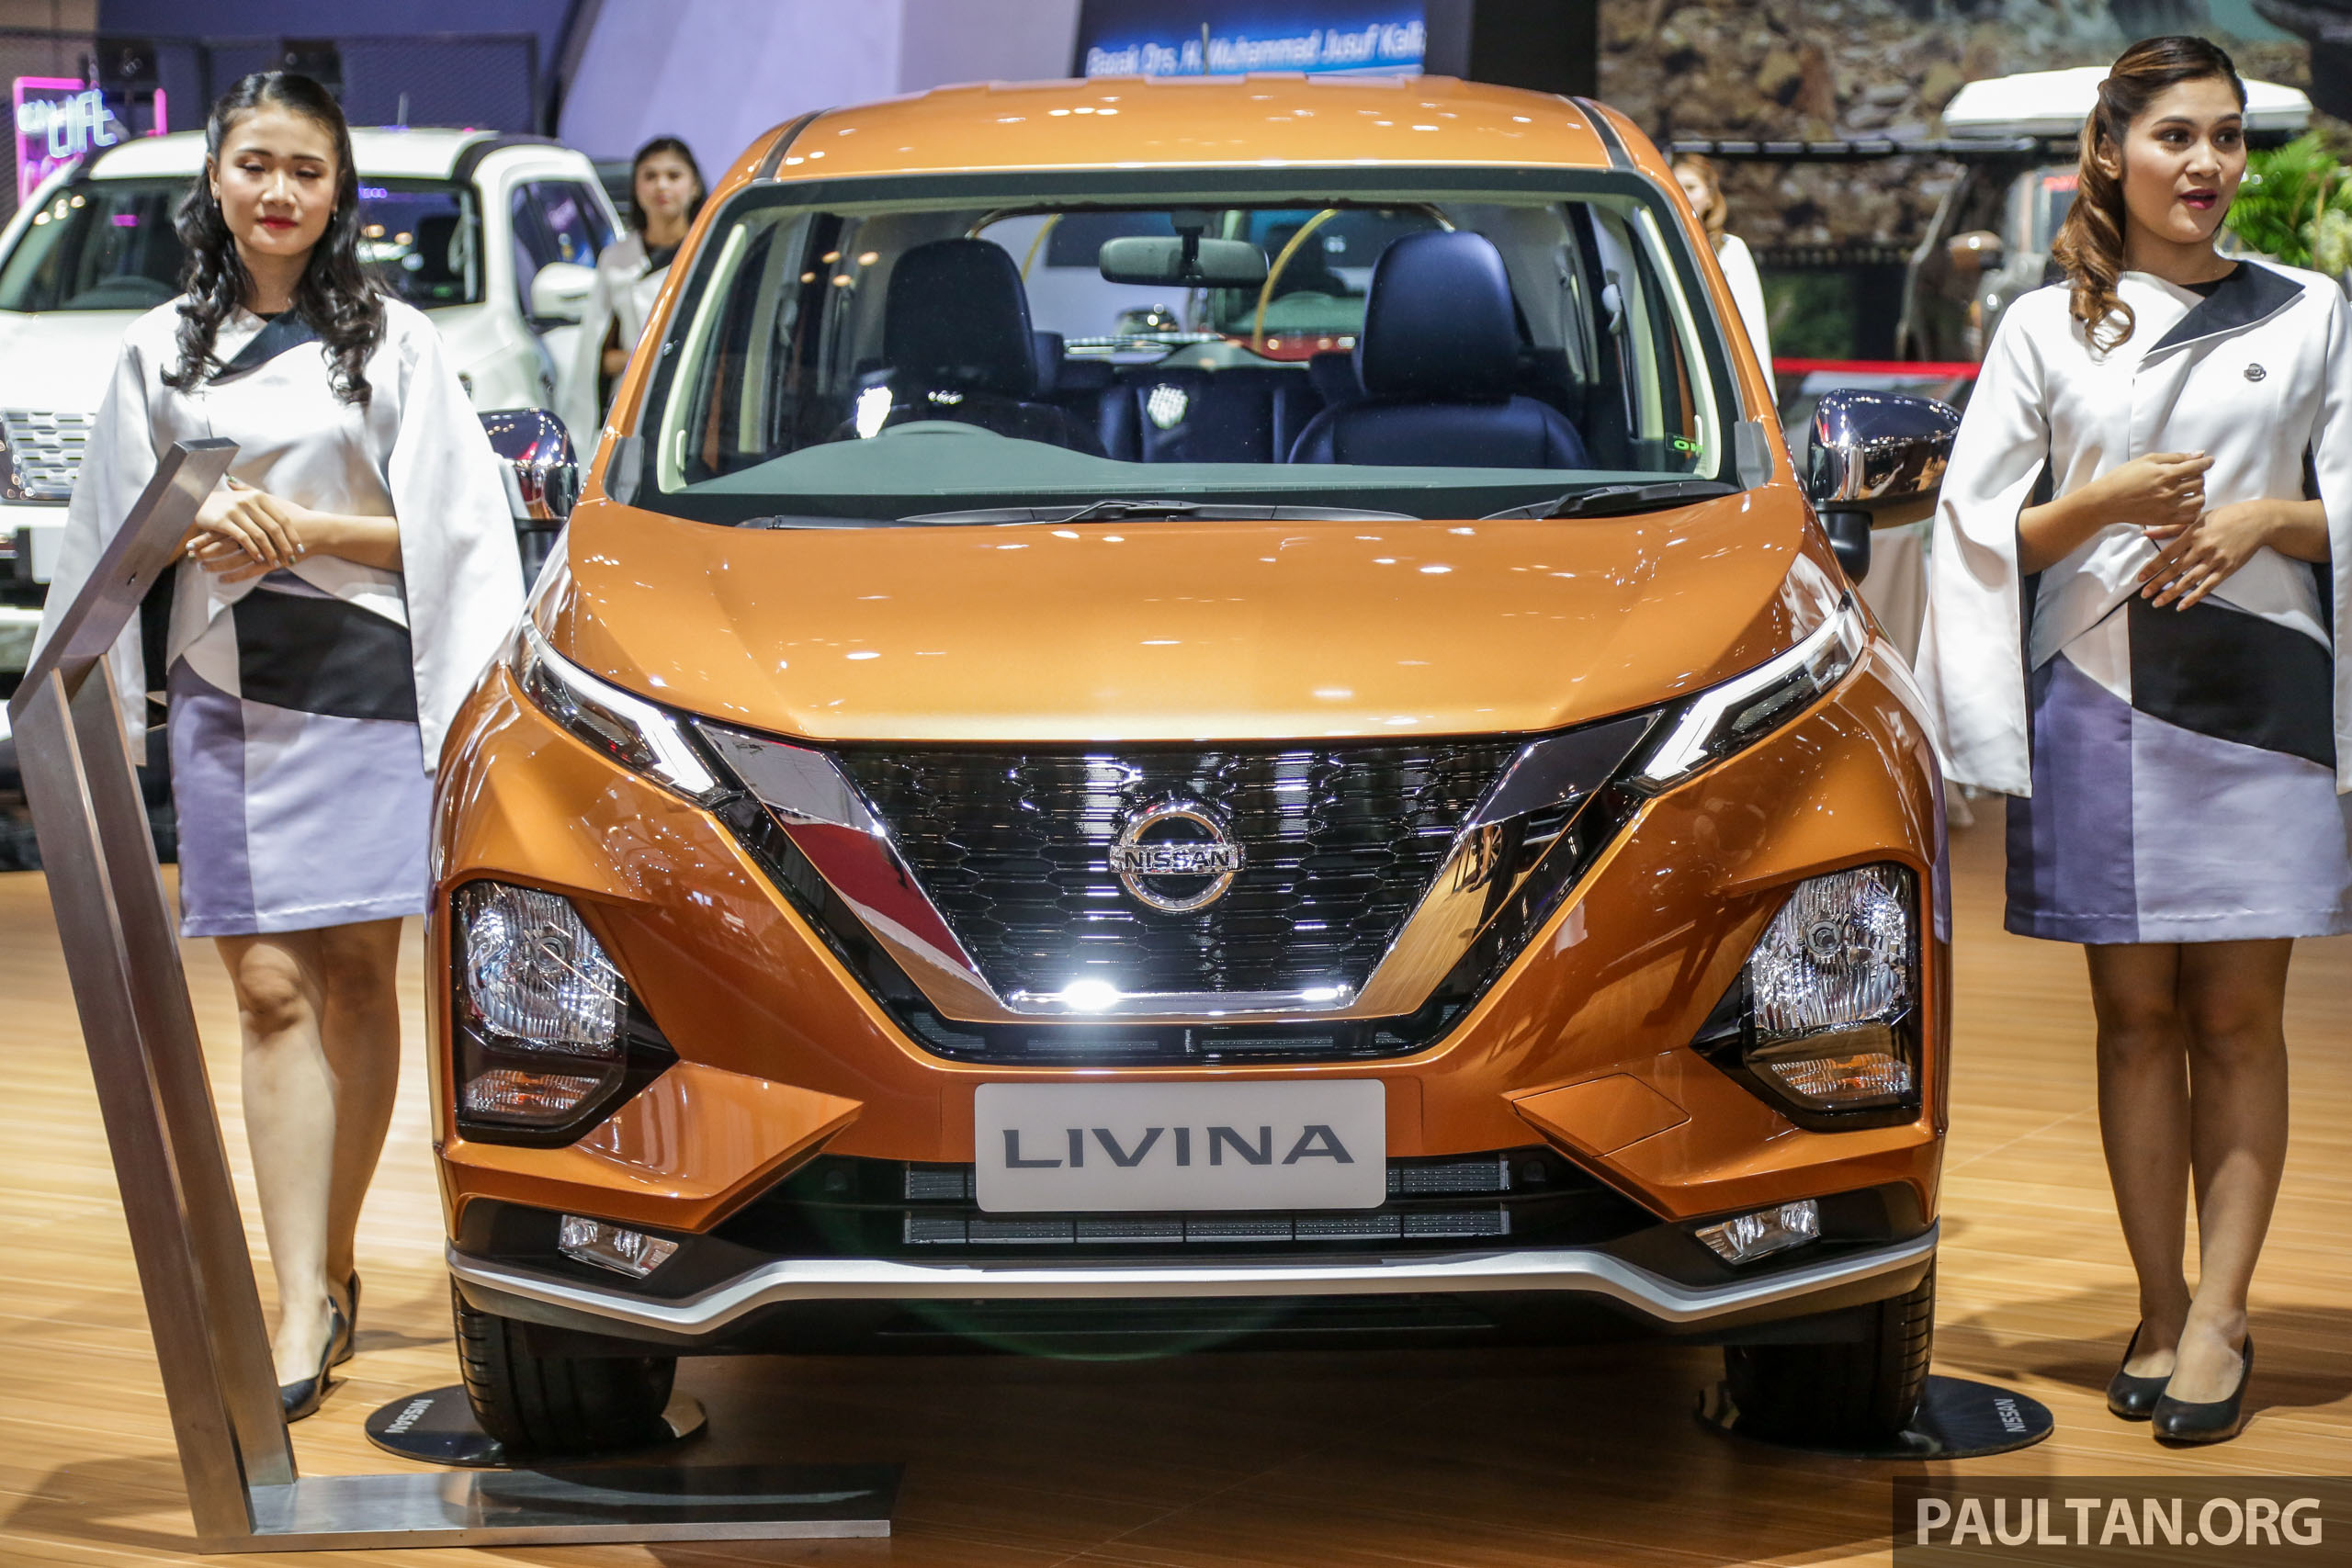 https://s3.paultan.org/image/2019/07/GIIAS2019_Nissan_Livina-3.jpg